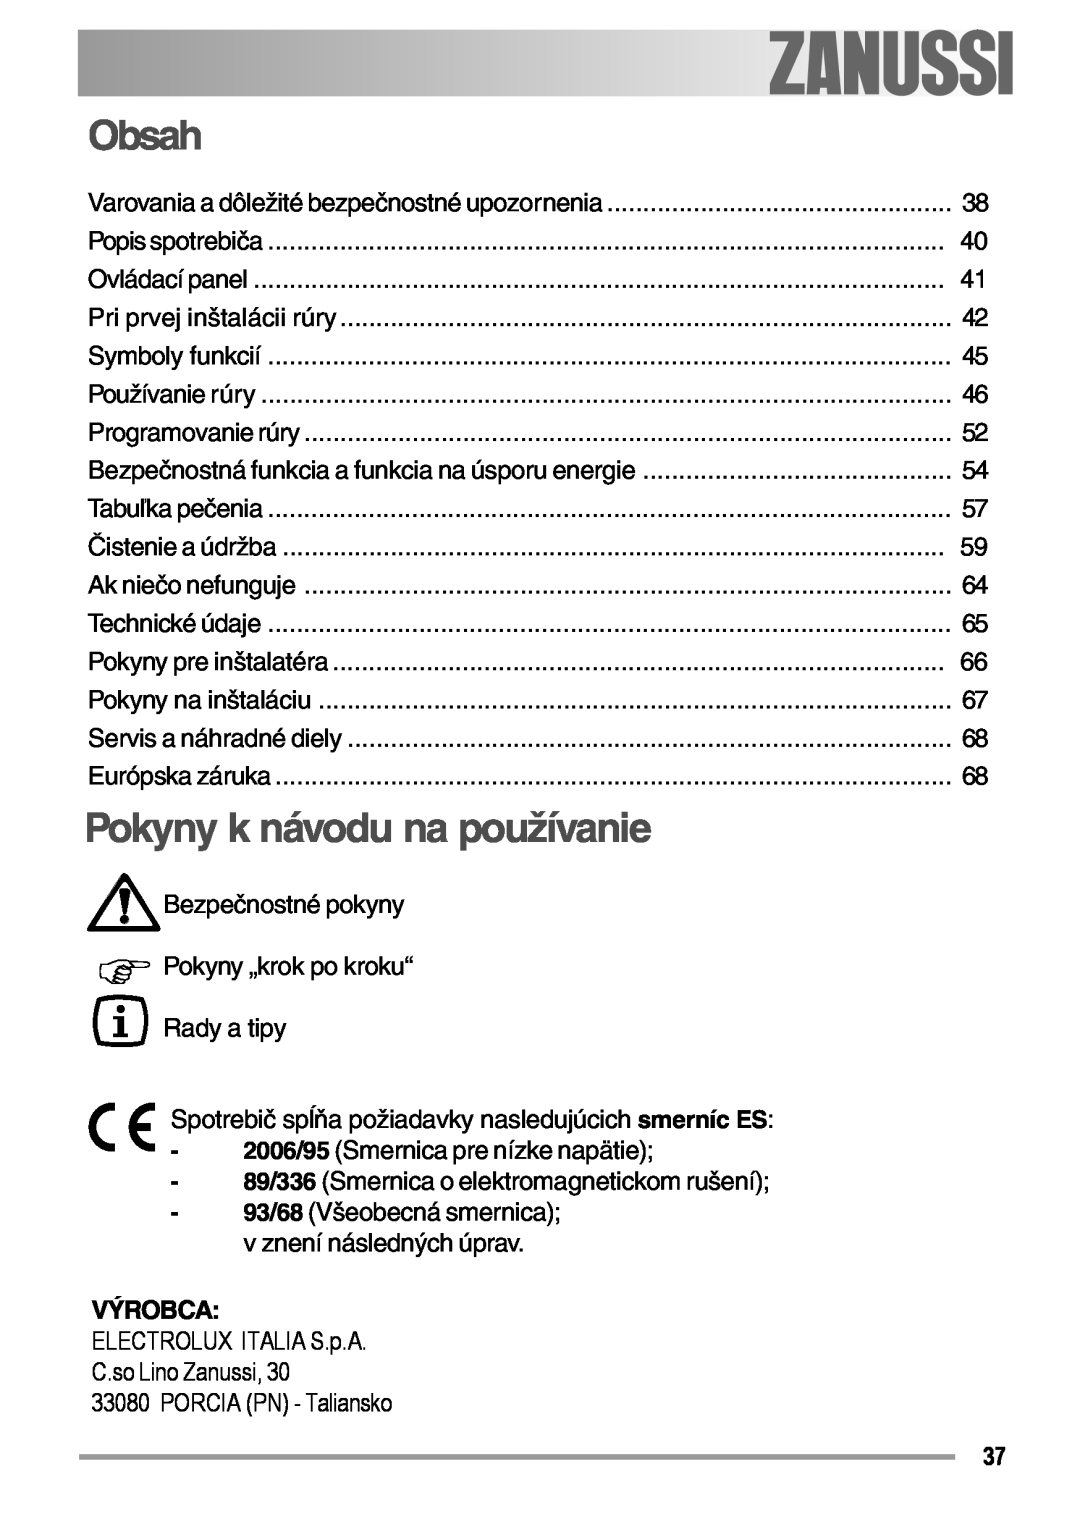 Zanussi ZOB 594 manual Obsah, Pokyny k návodu na používanie, Výrobca 